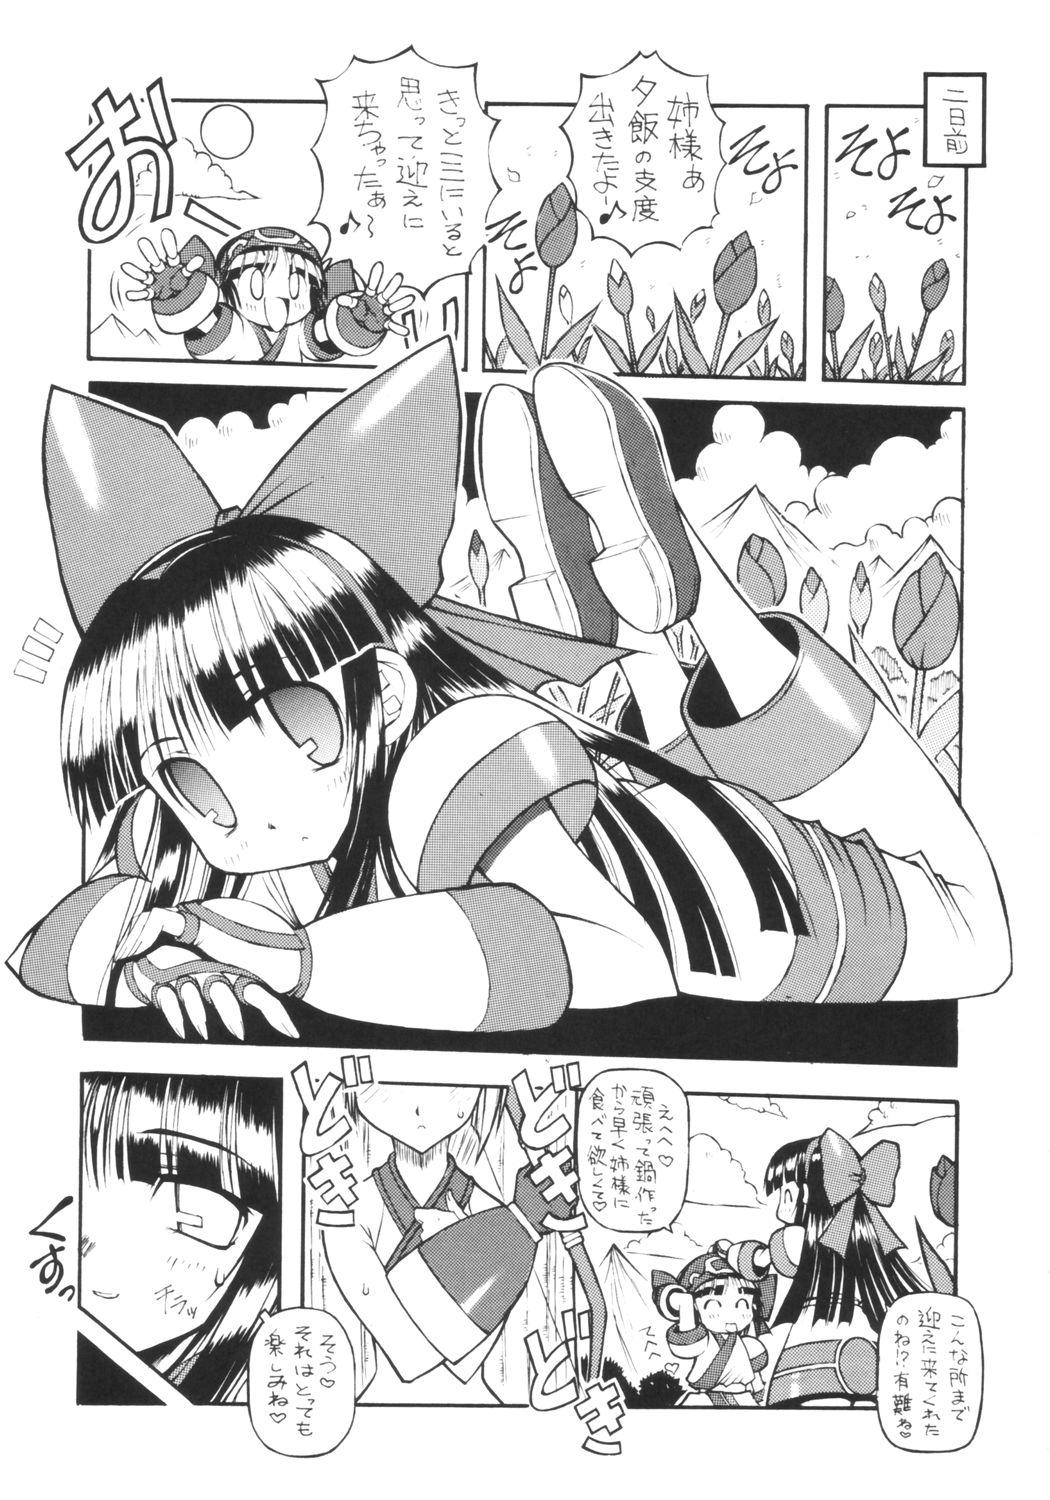 Student Zero Shiki - Samurai spirits Putita - Page 8